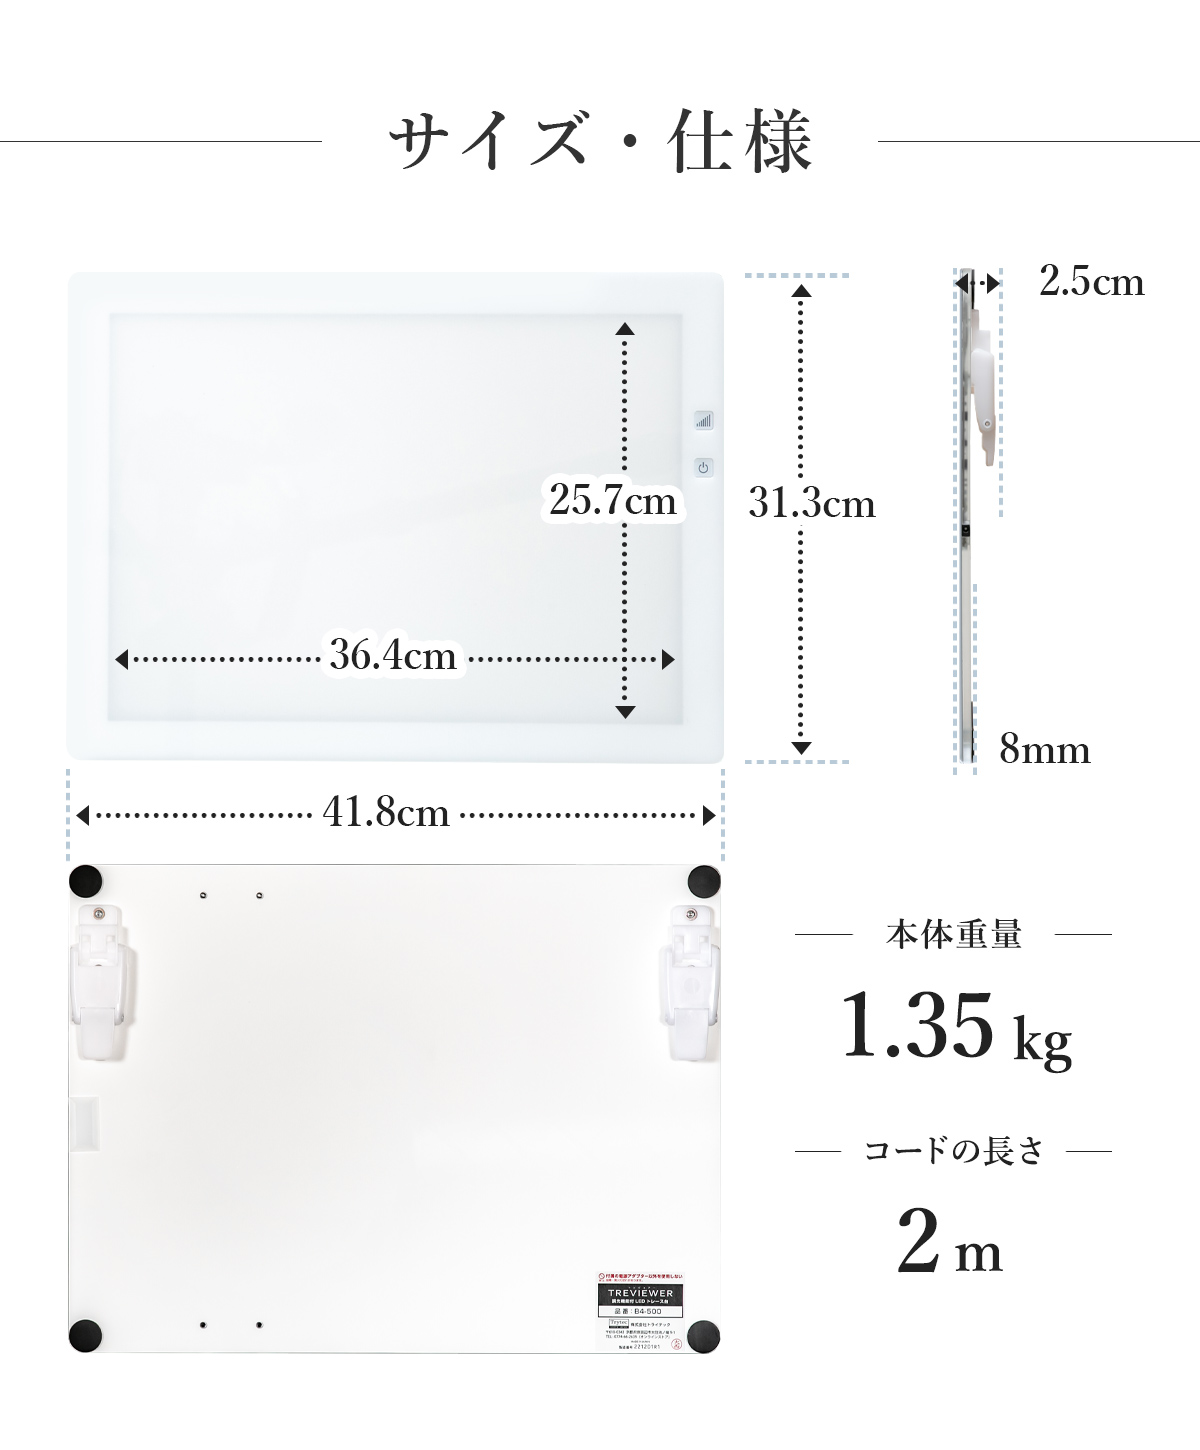 ピュアホワイト【薄型8mm】【7段階調光機能付き】B4サイズ LED